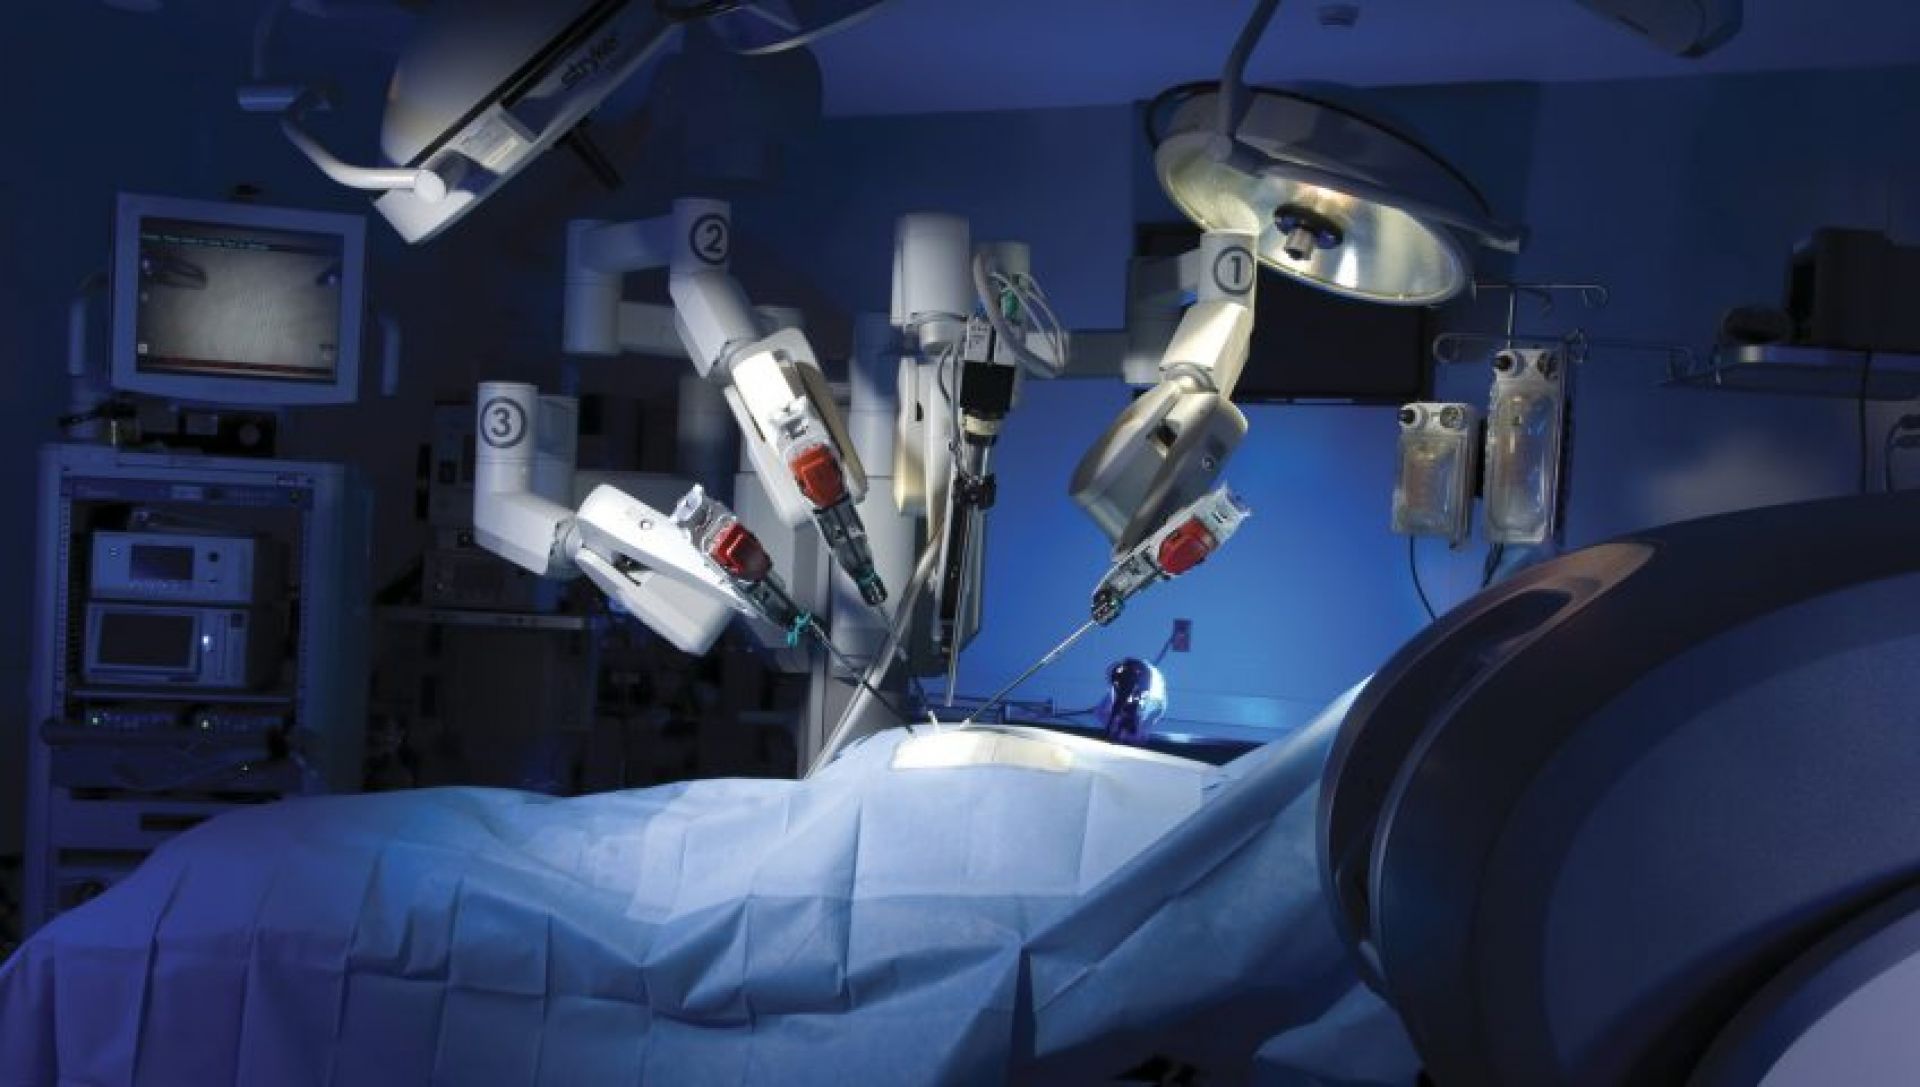 Ρομποτική Χειρουργική στην Παλινδρόμηση και τη Διαφραγματοκήλη. Η ανώδυνη και αποτελεσματική λύση ενός συχνού προβλήματος.